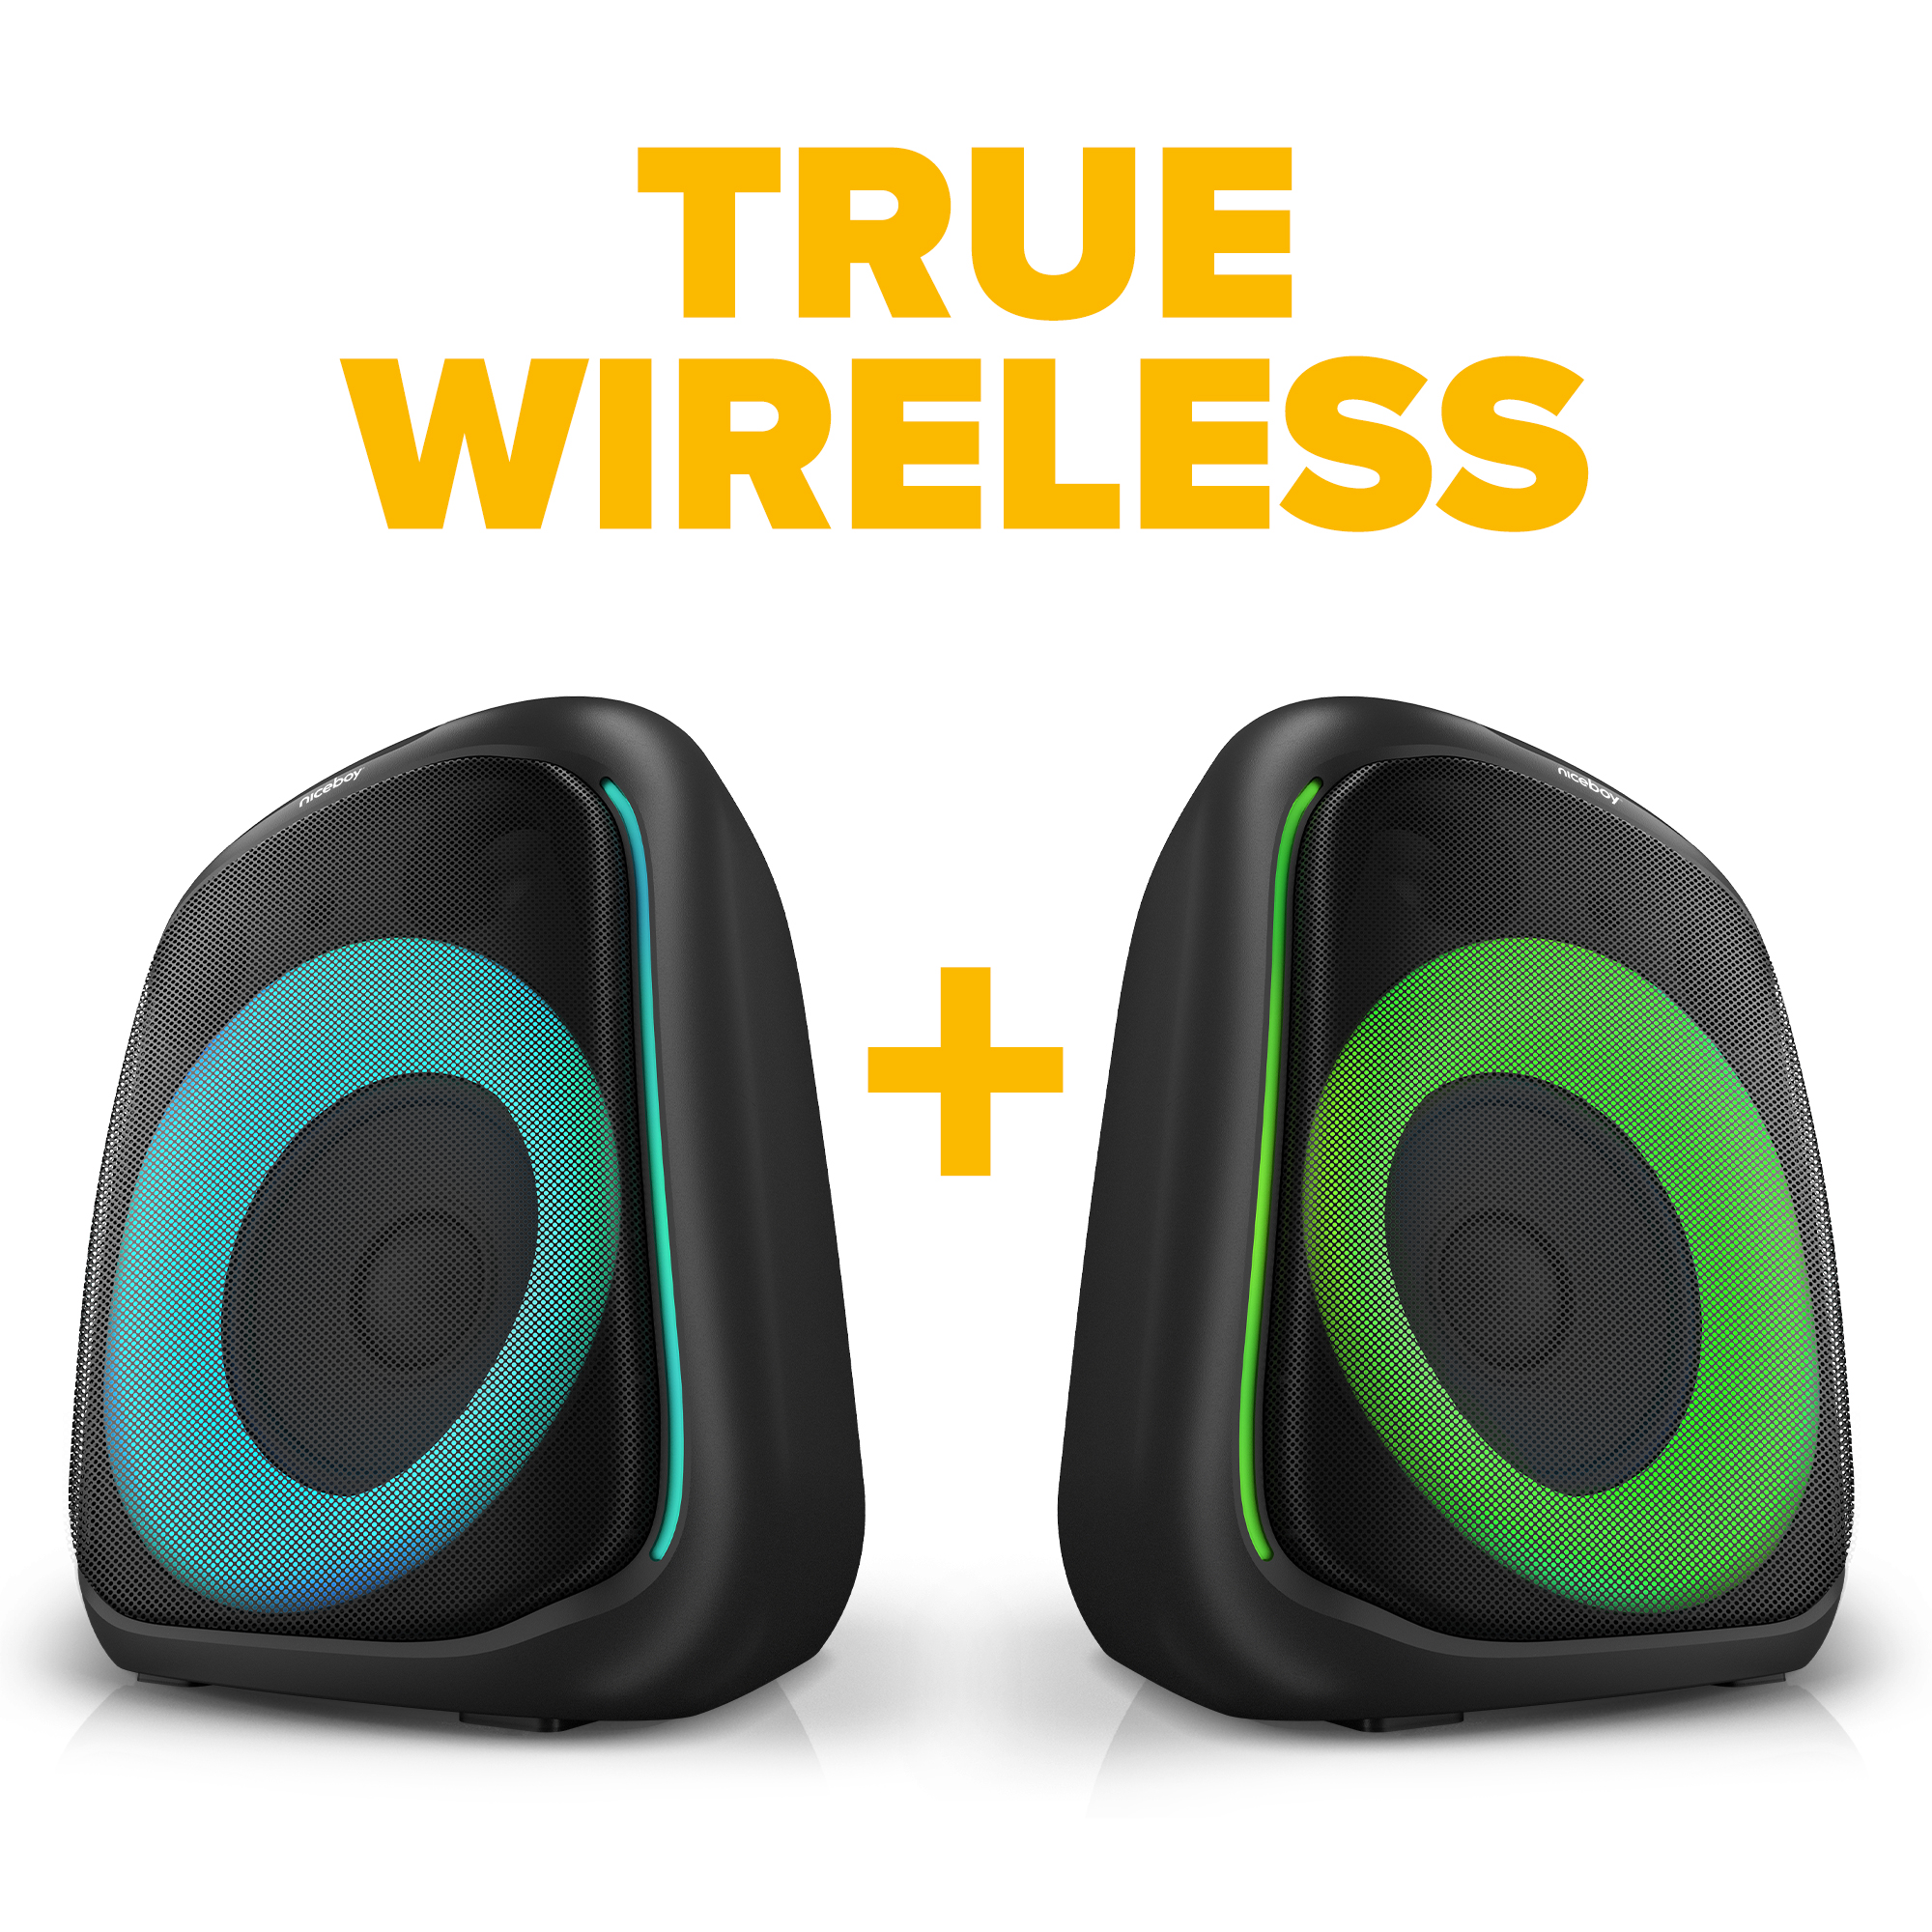 True Wireless